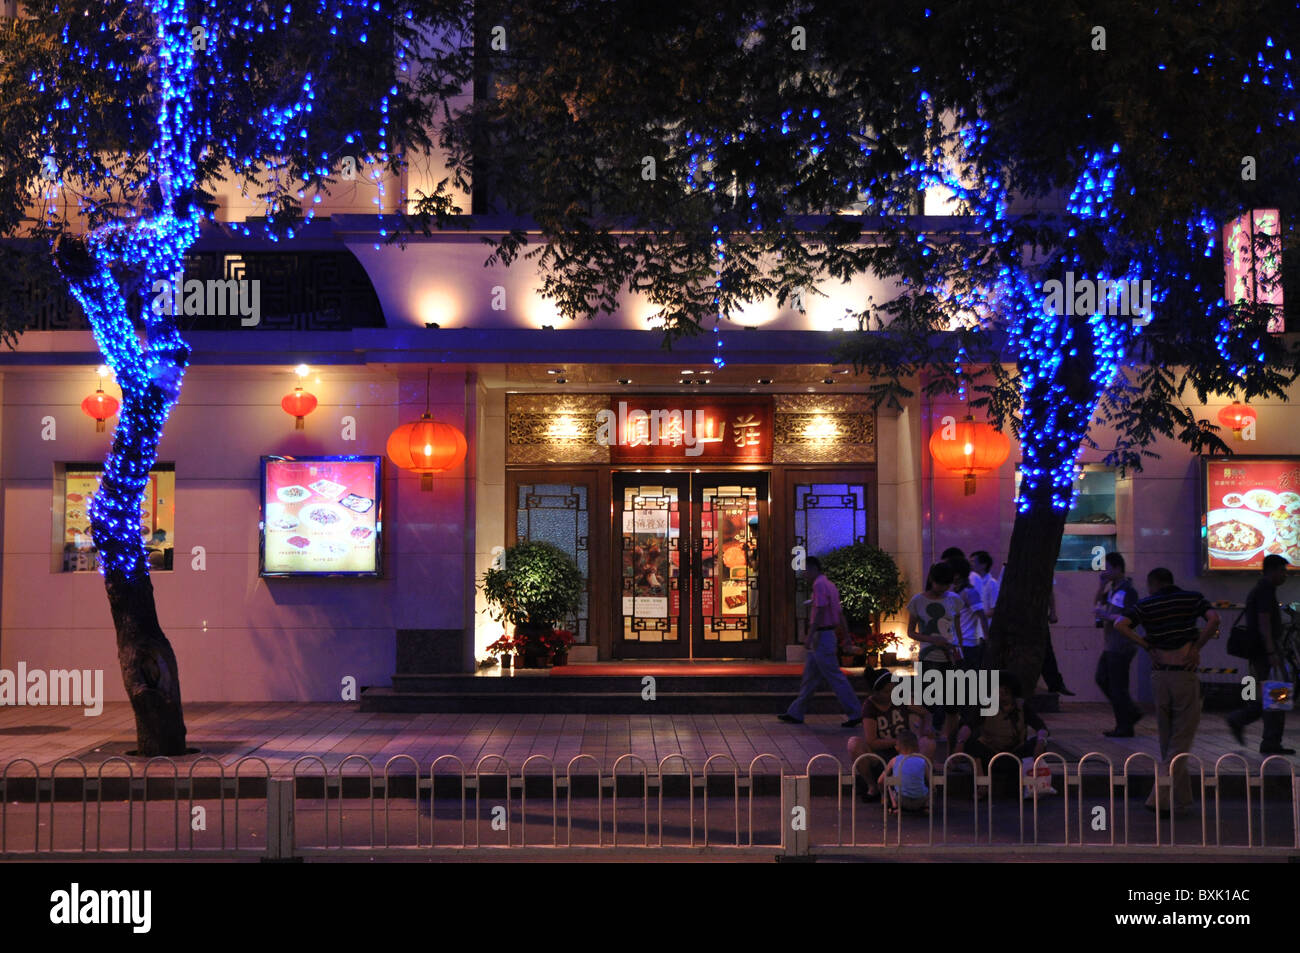 La vida en la calle, las luces azules, fachada, Beijing, China Foto de stock